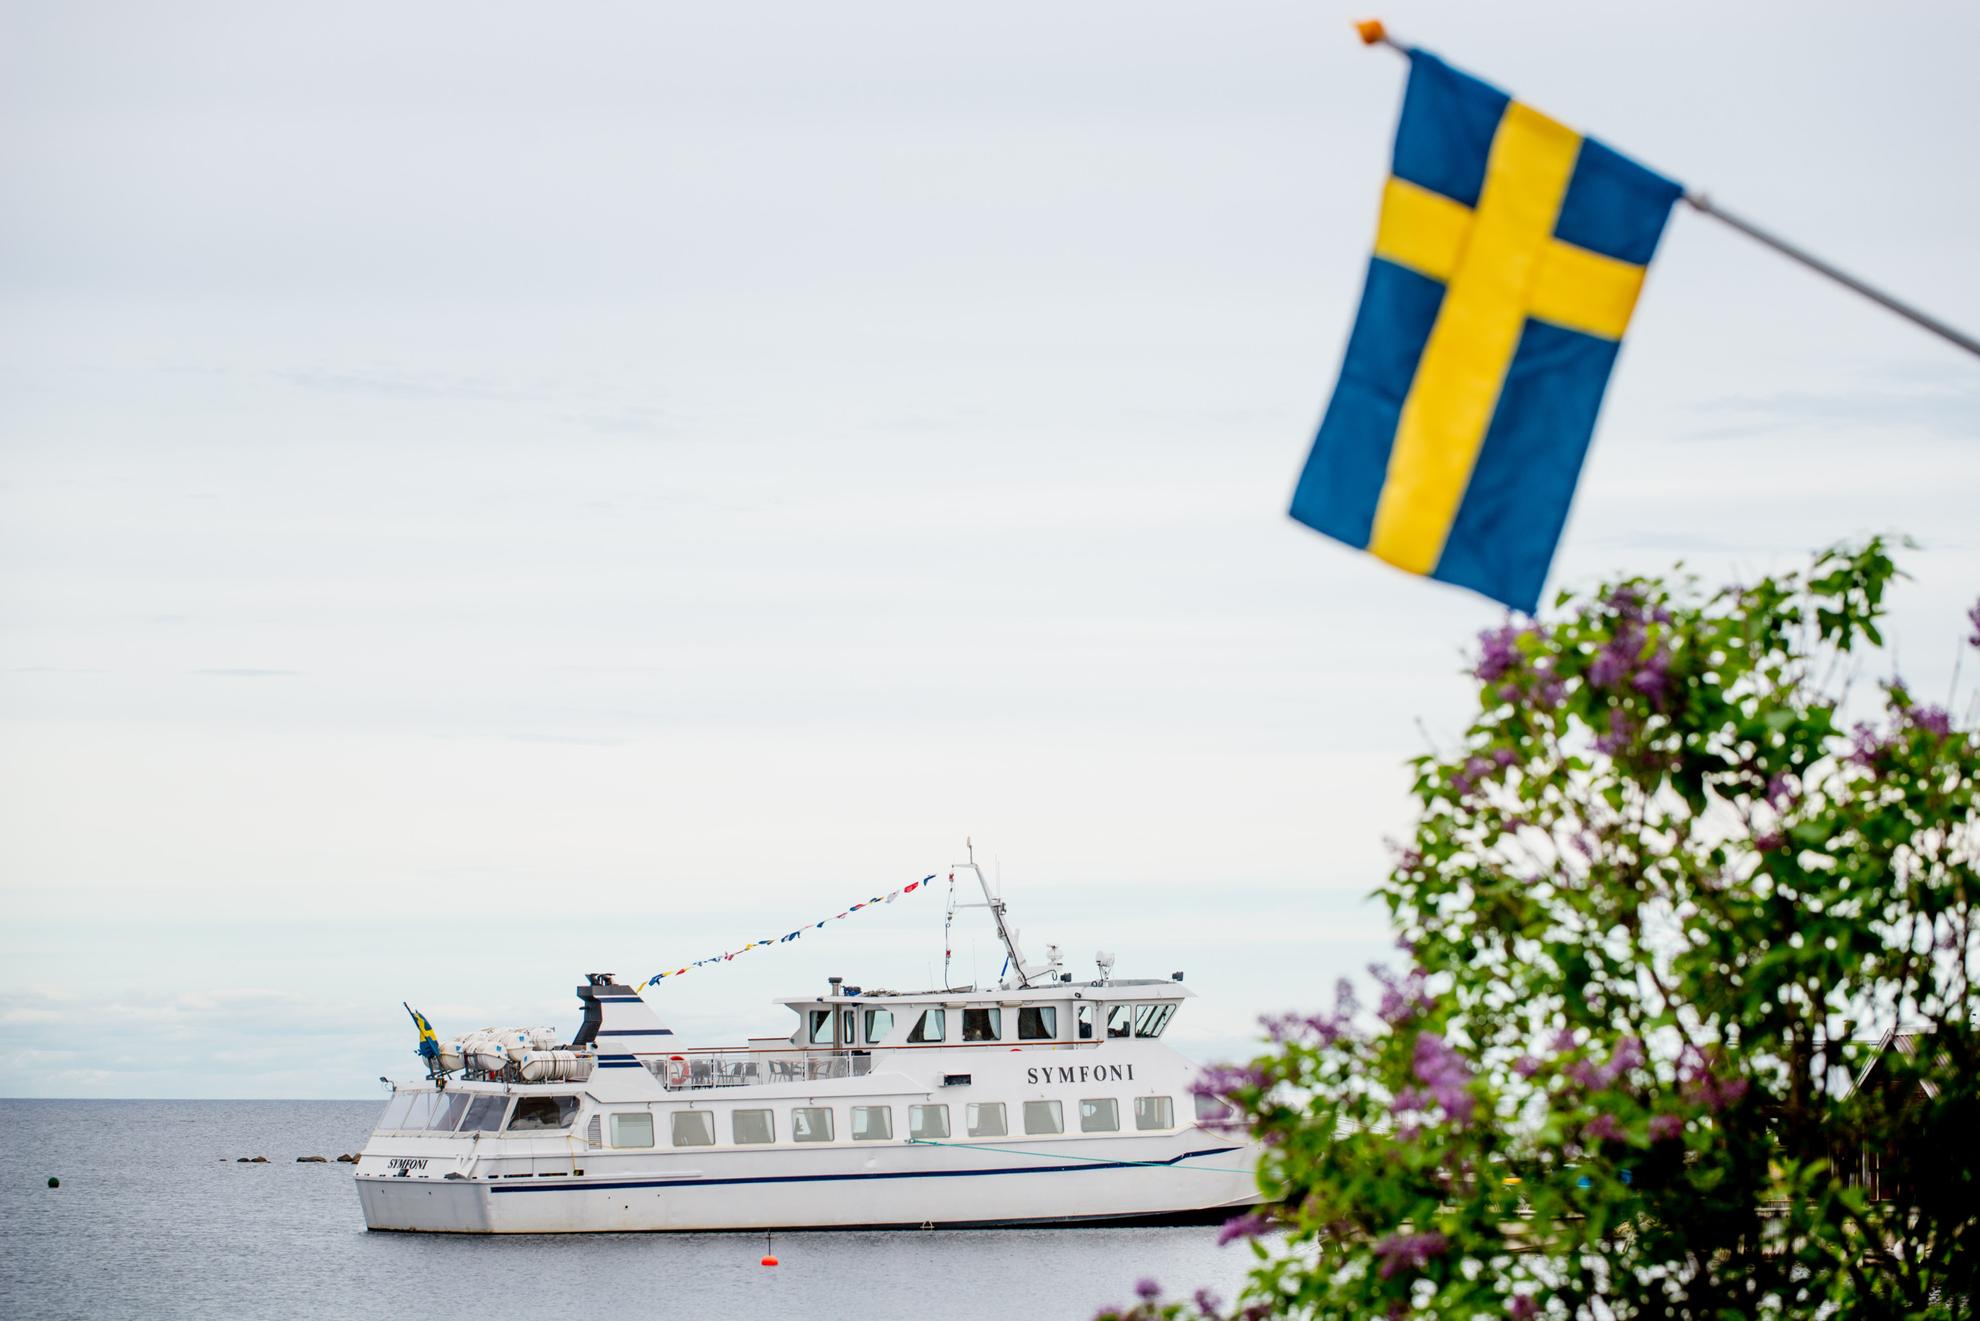 Un bateau nommé Symfoni flotte sur l'eau, avec un drapeau suédois et des fleurs violettes au premier plan.